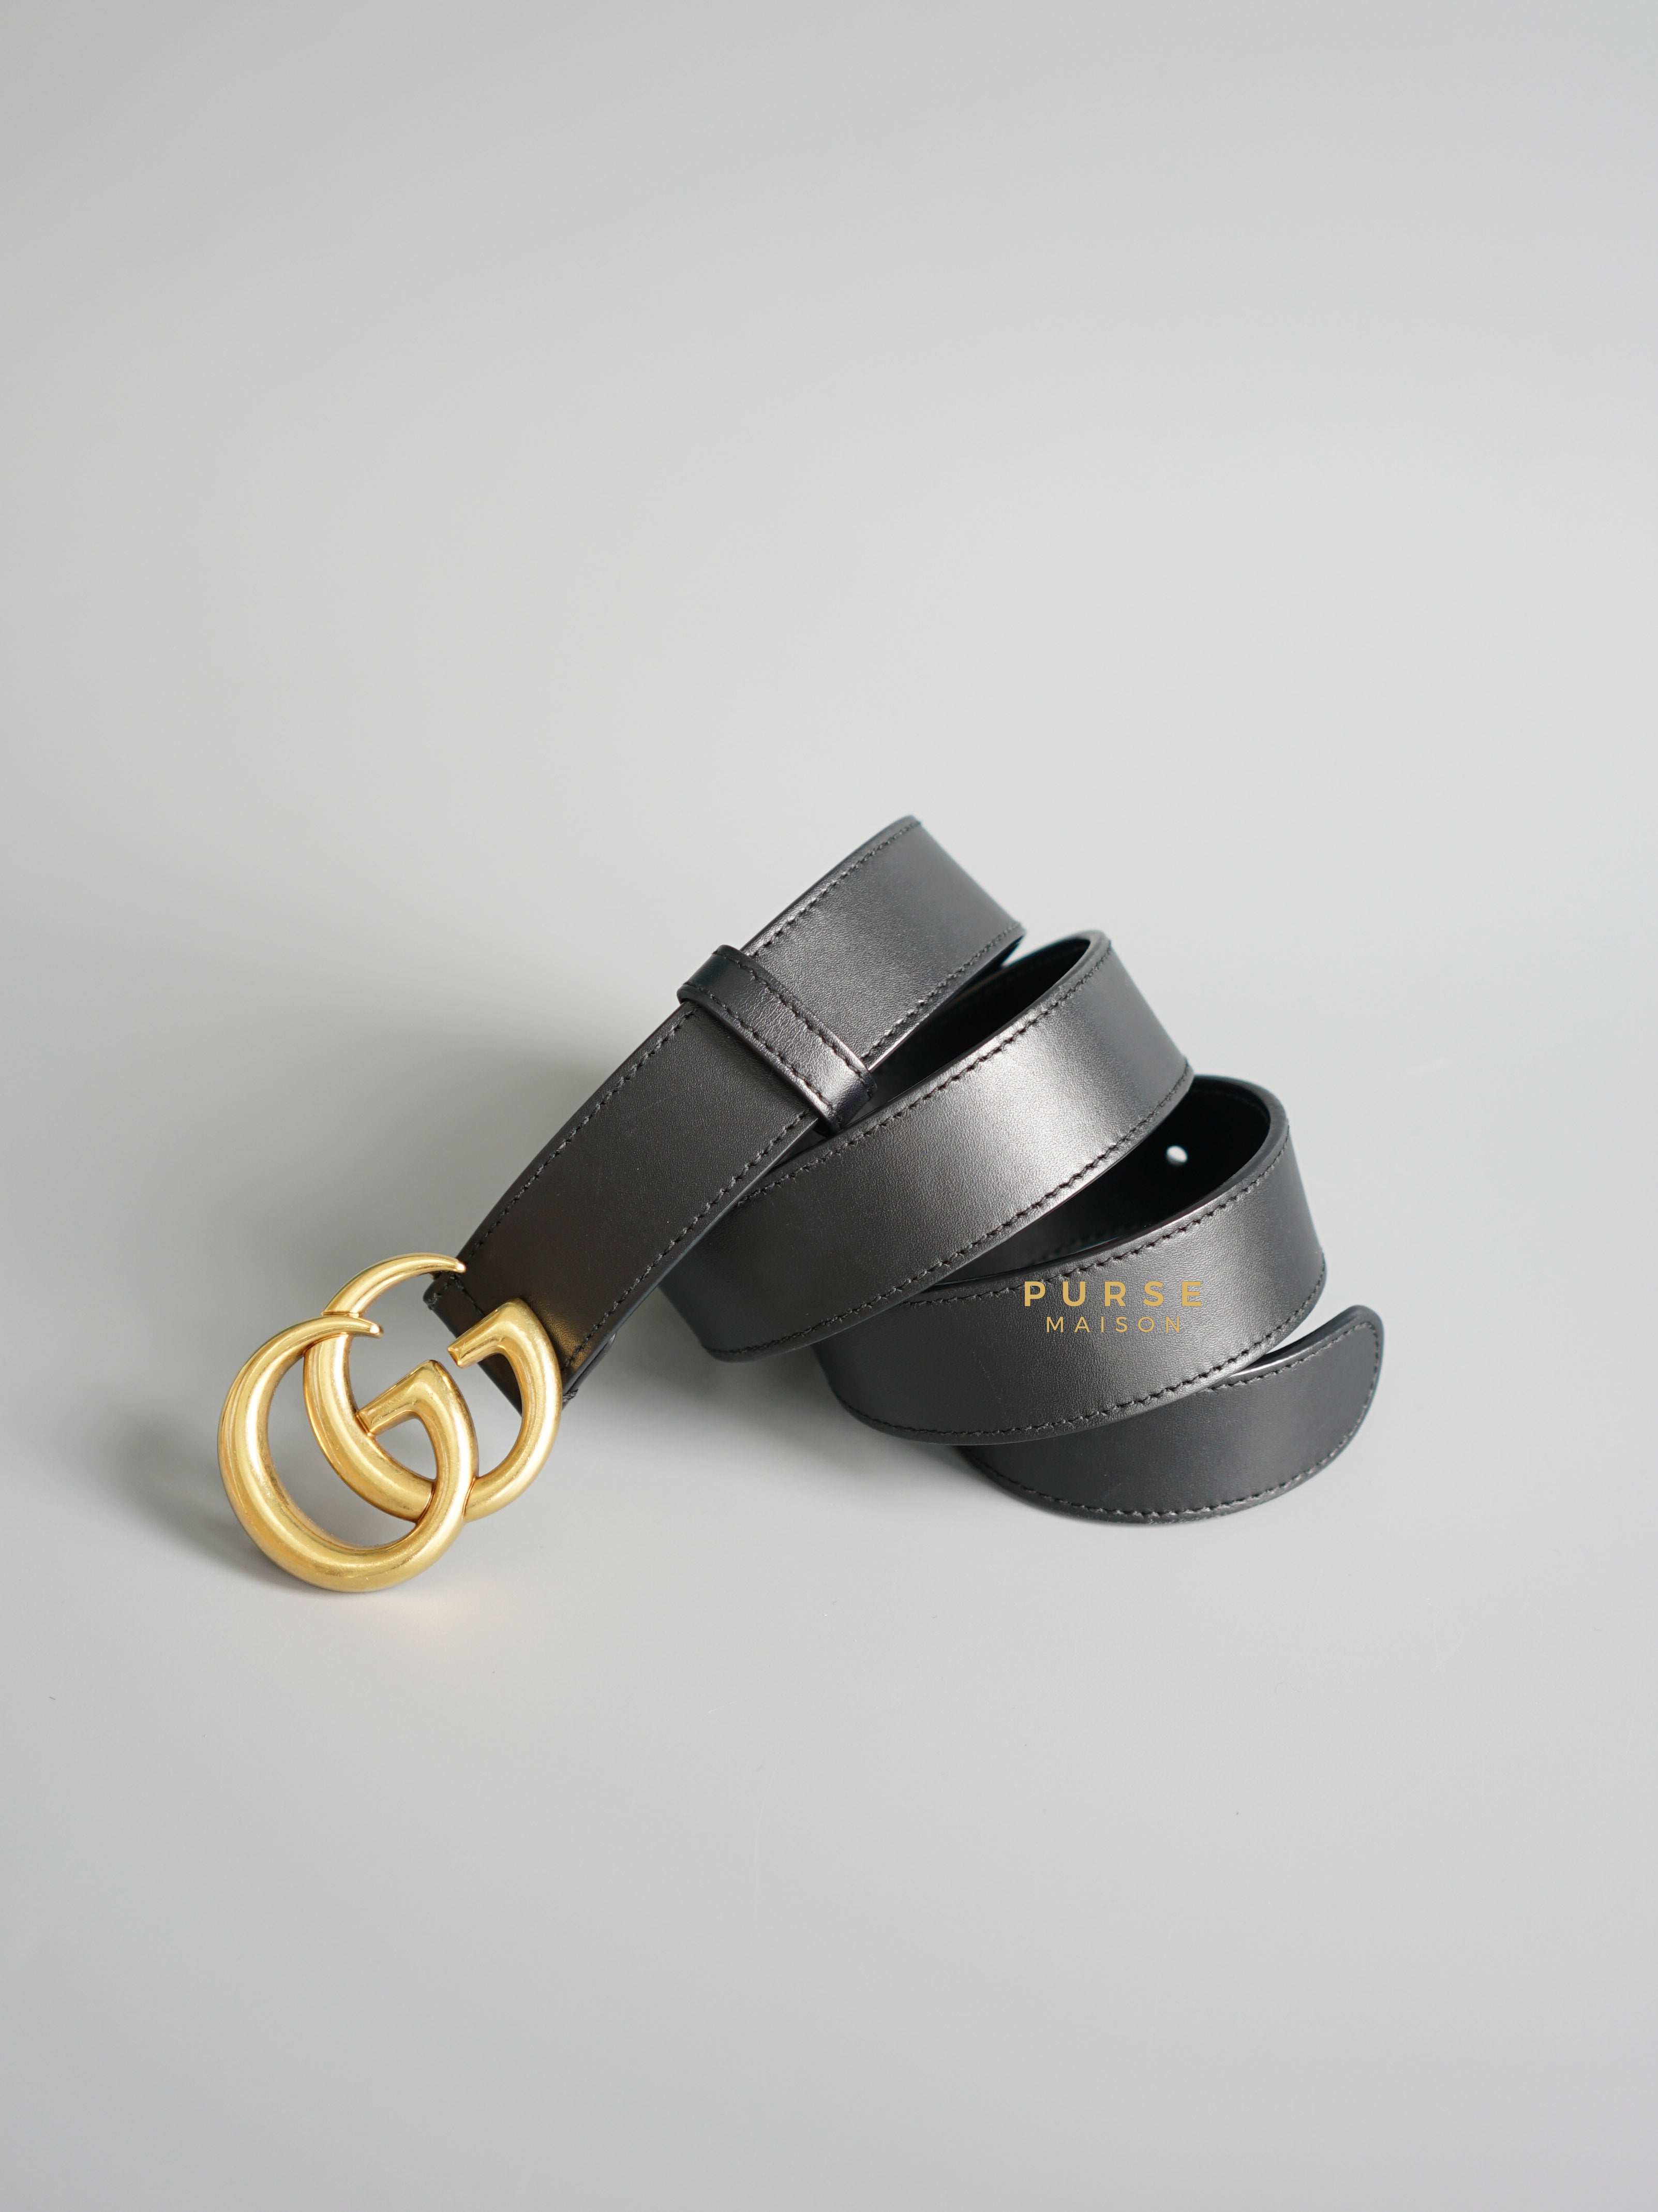 Gucci GG Black Leather Belt (Size 80) | Purse Maison Luxury Bags Shop